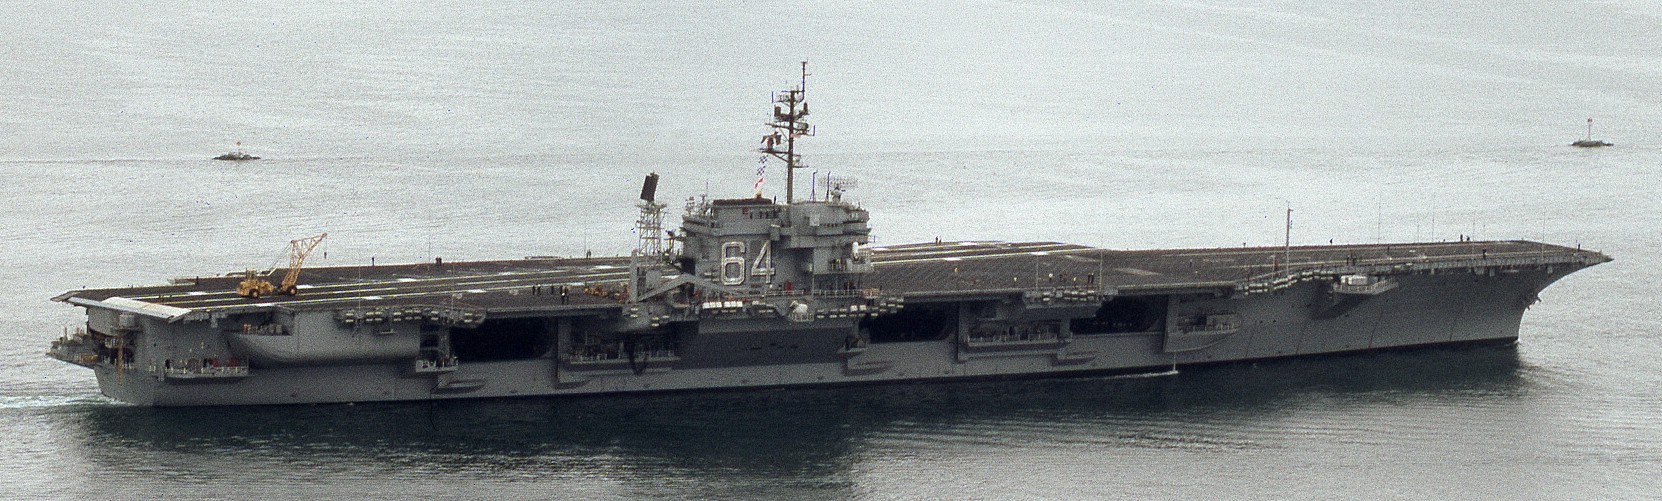 cv-64 uss constellation kitty hawk class aircraft carrier us navy 114